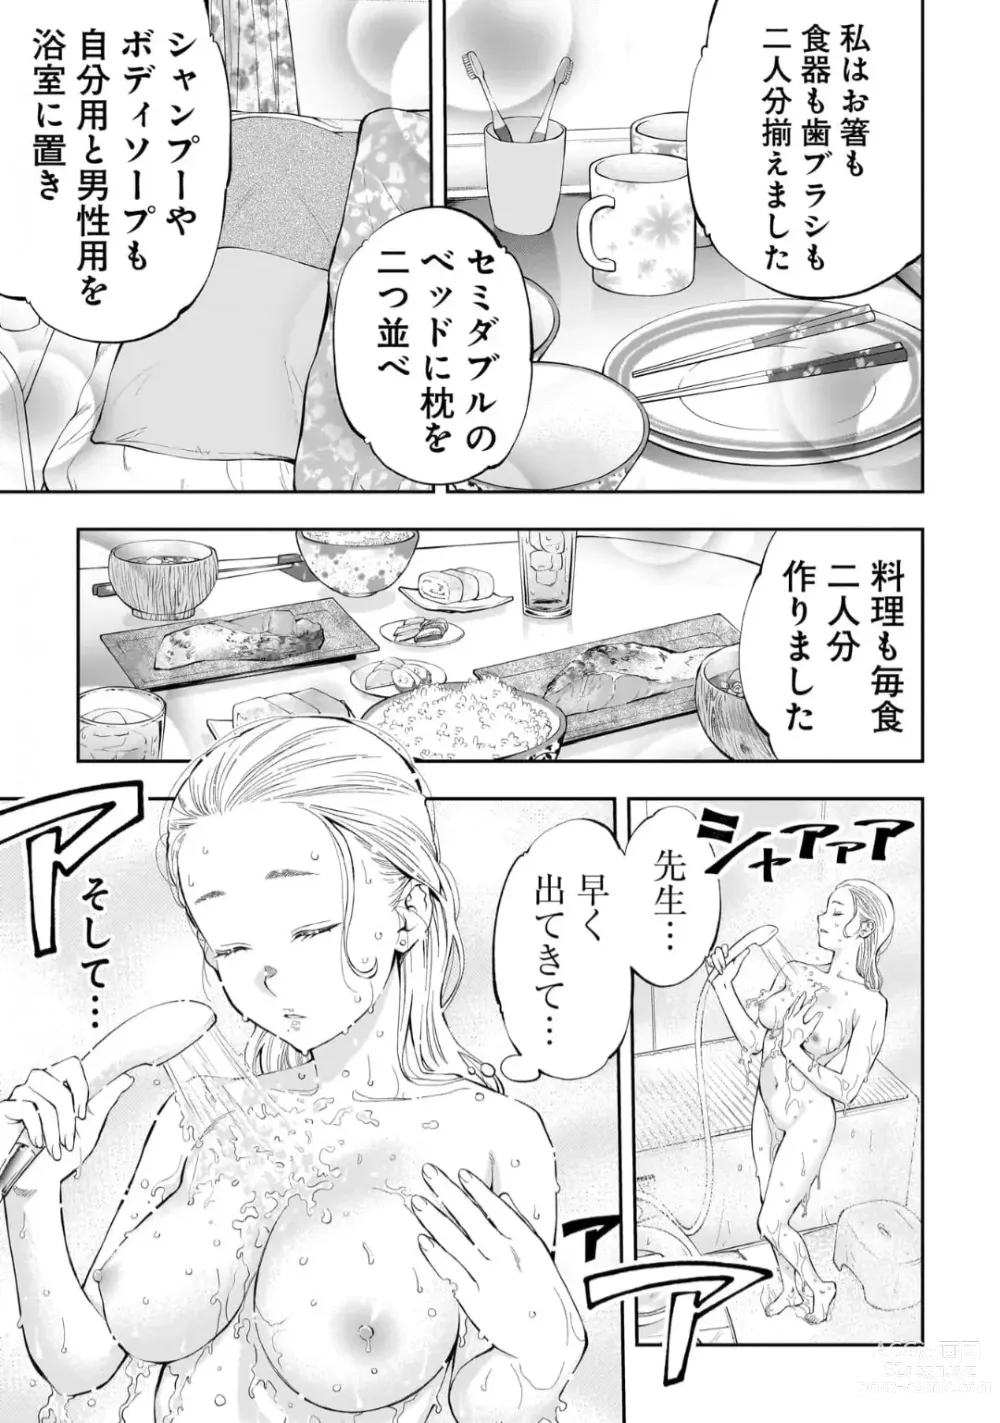 Page 12 of manga Kai Waidan Ch.1